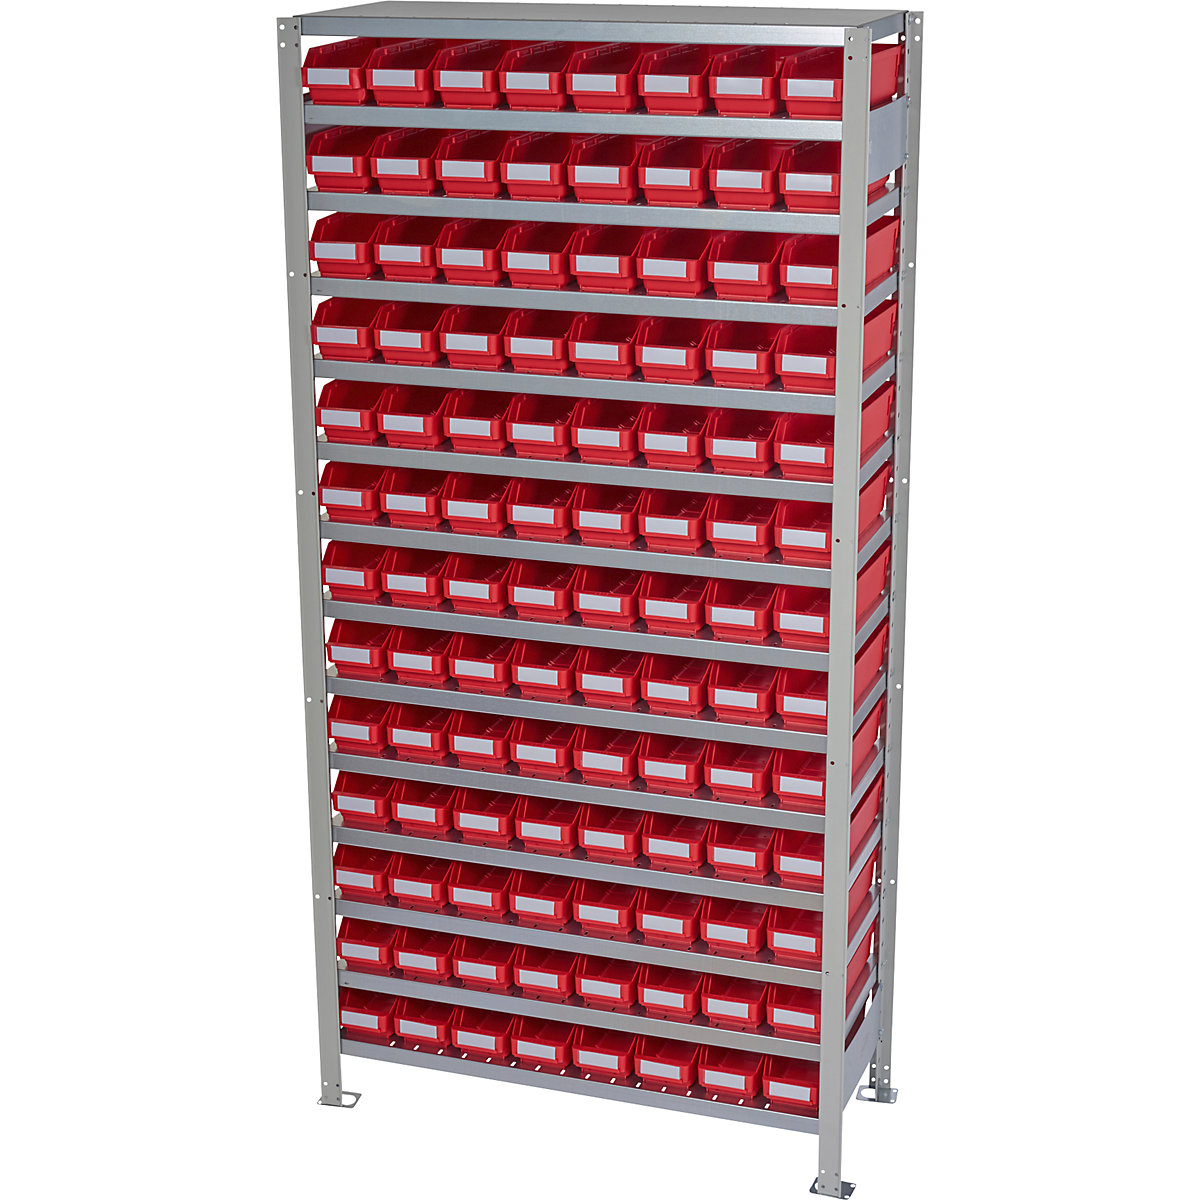 Estante de encaixar com caixas para estante – STEMO, altura da estante 2100 mm, estante básica, profundidade 400 mm, 104 caixas vermelhas-39